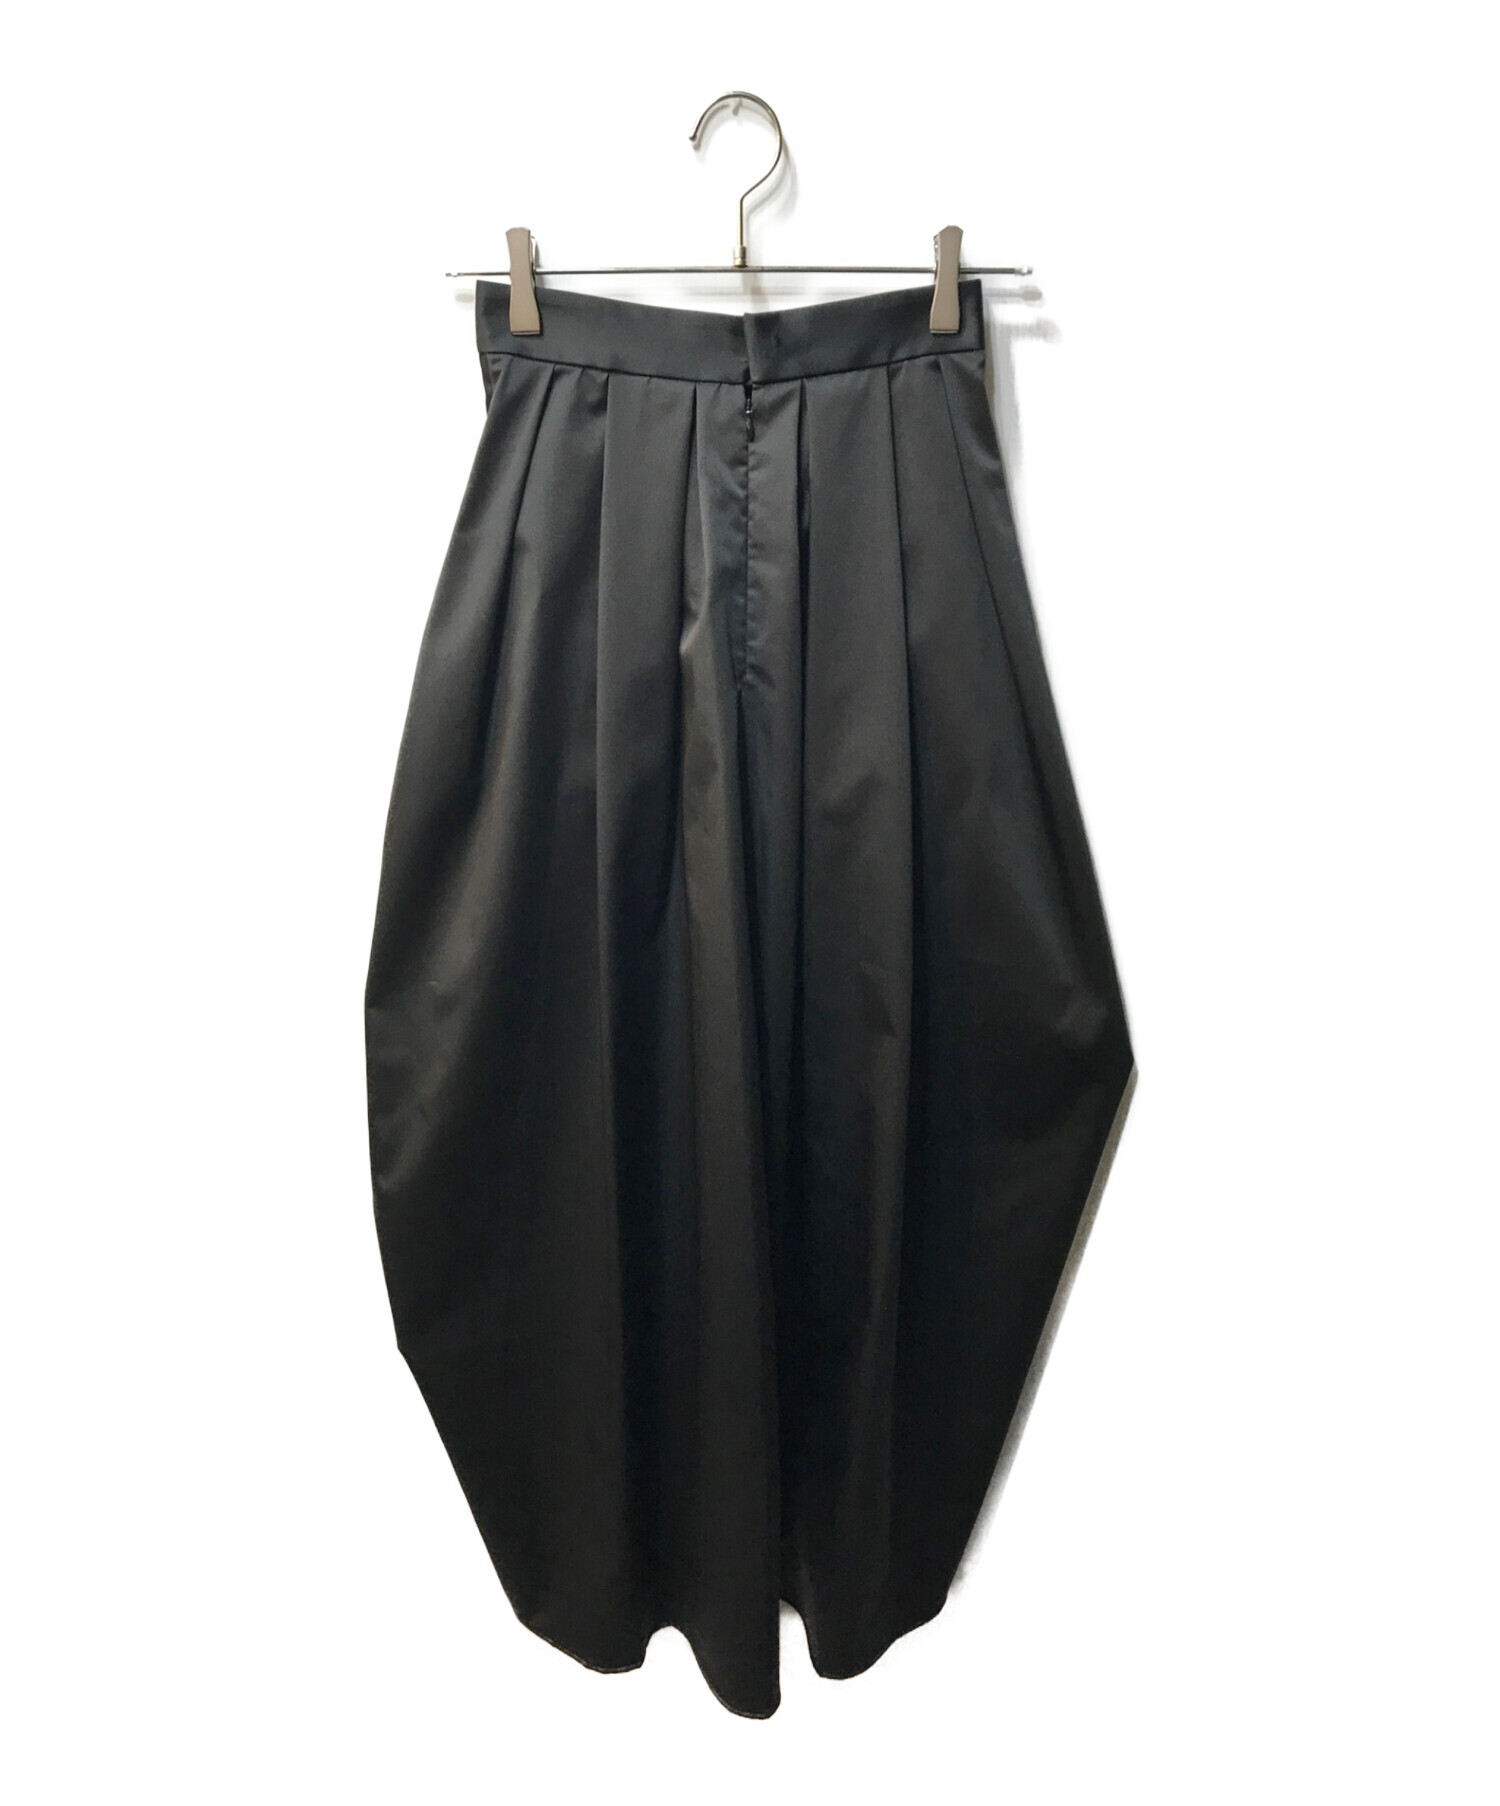 スカート【美品】Louren design taffeta skirt